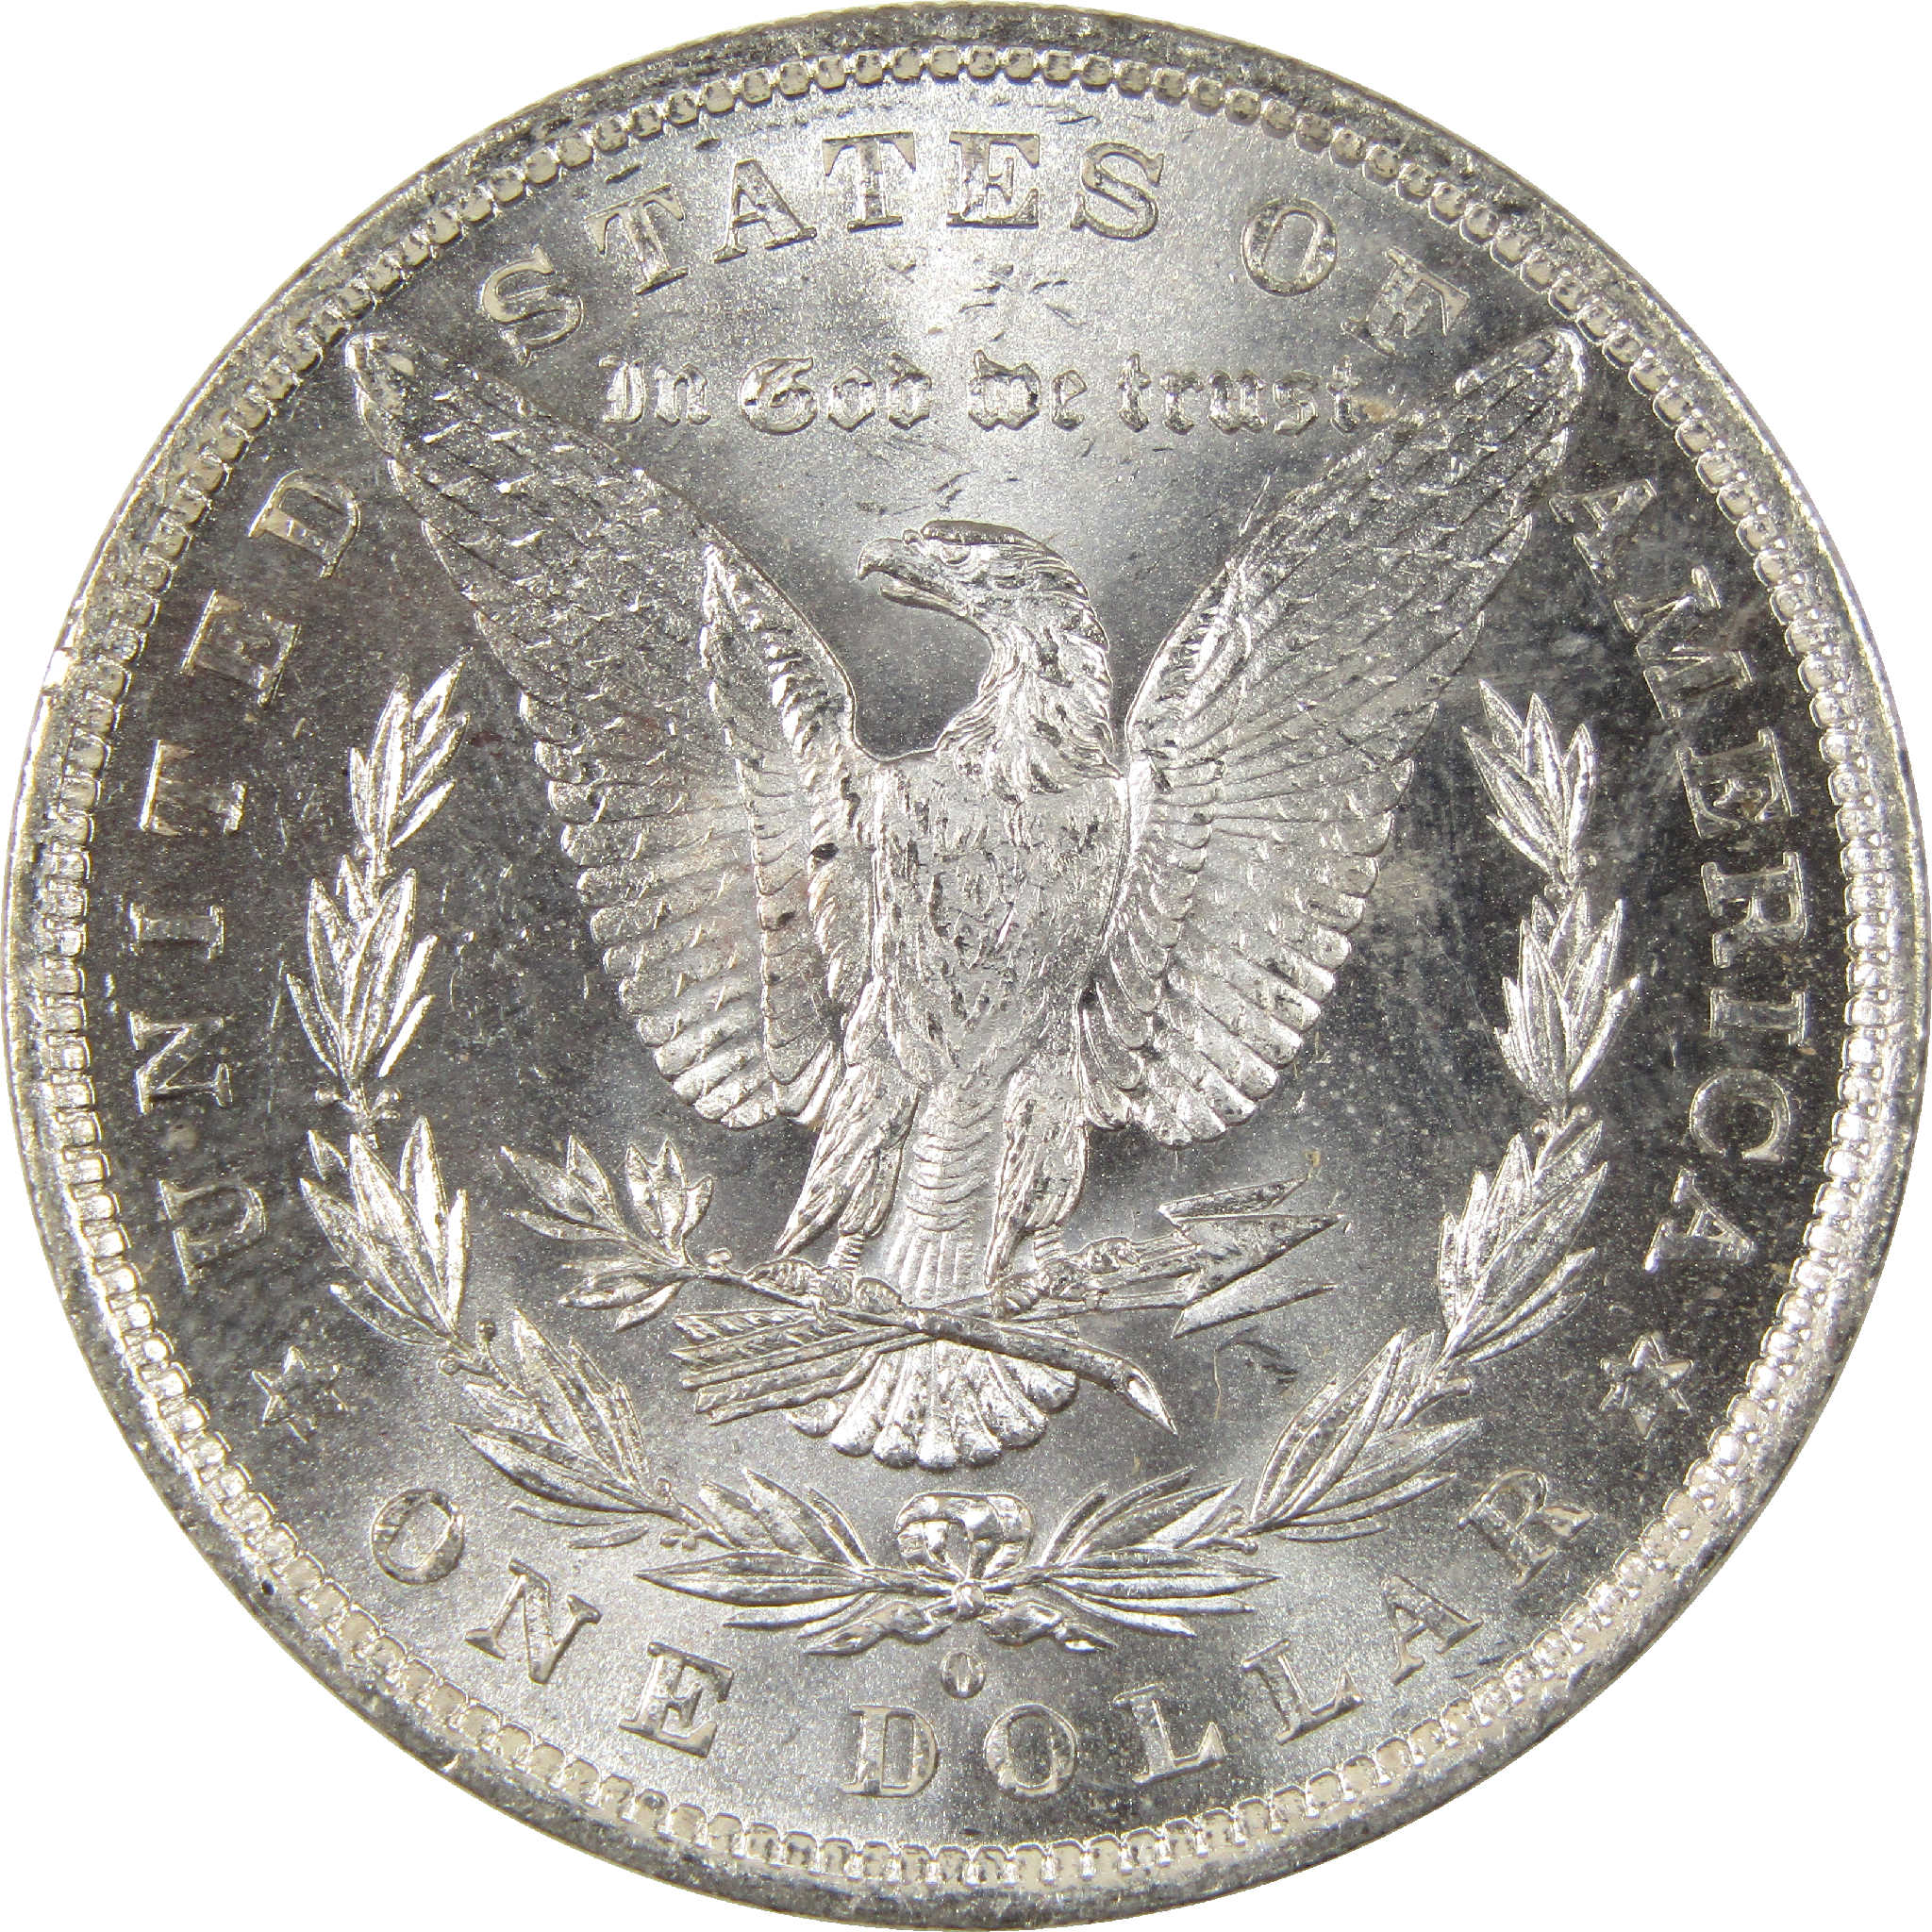 1882 O Morgan Dollar Uncirculated Silver $1 Coin - Morgan coin - Morgan silver dollar - Morgan silver dollar for sale - Profile Coins &amp; Collectibles